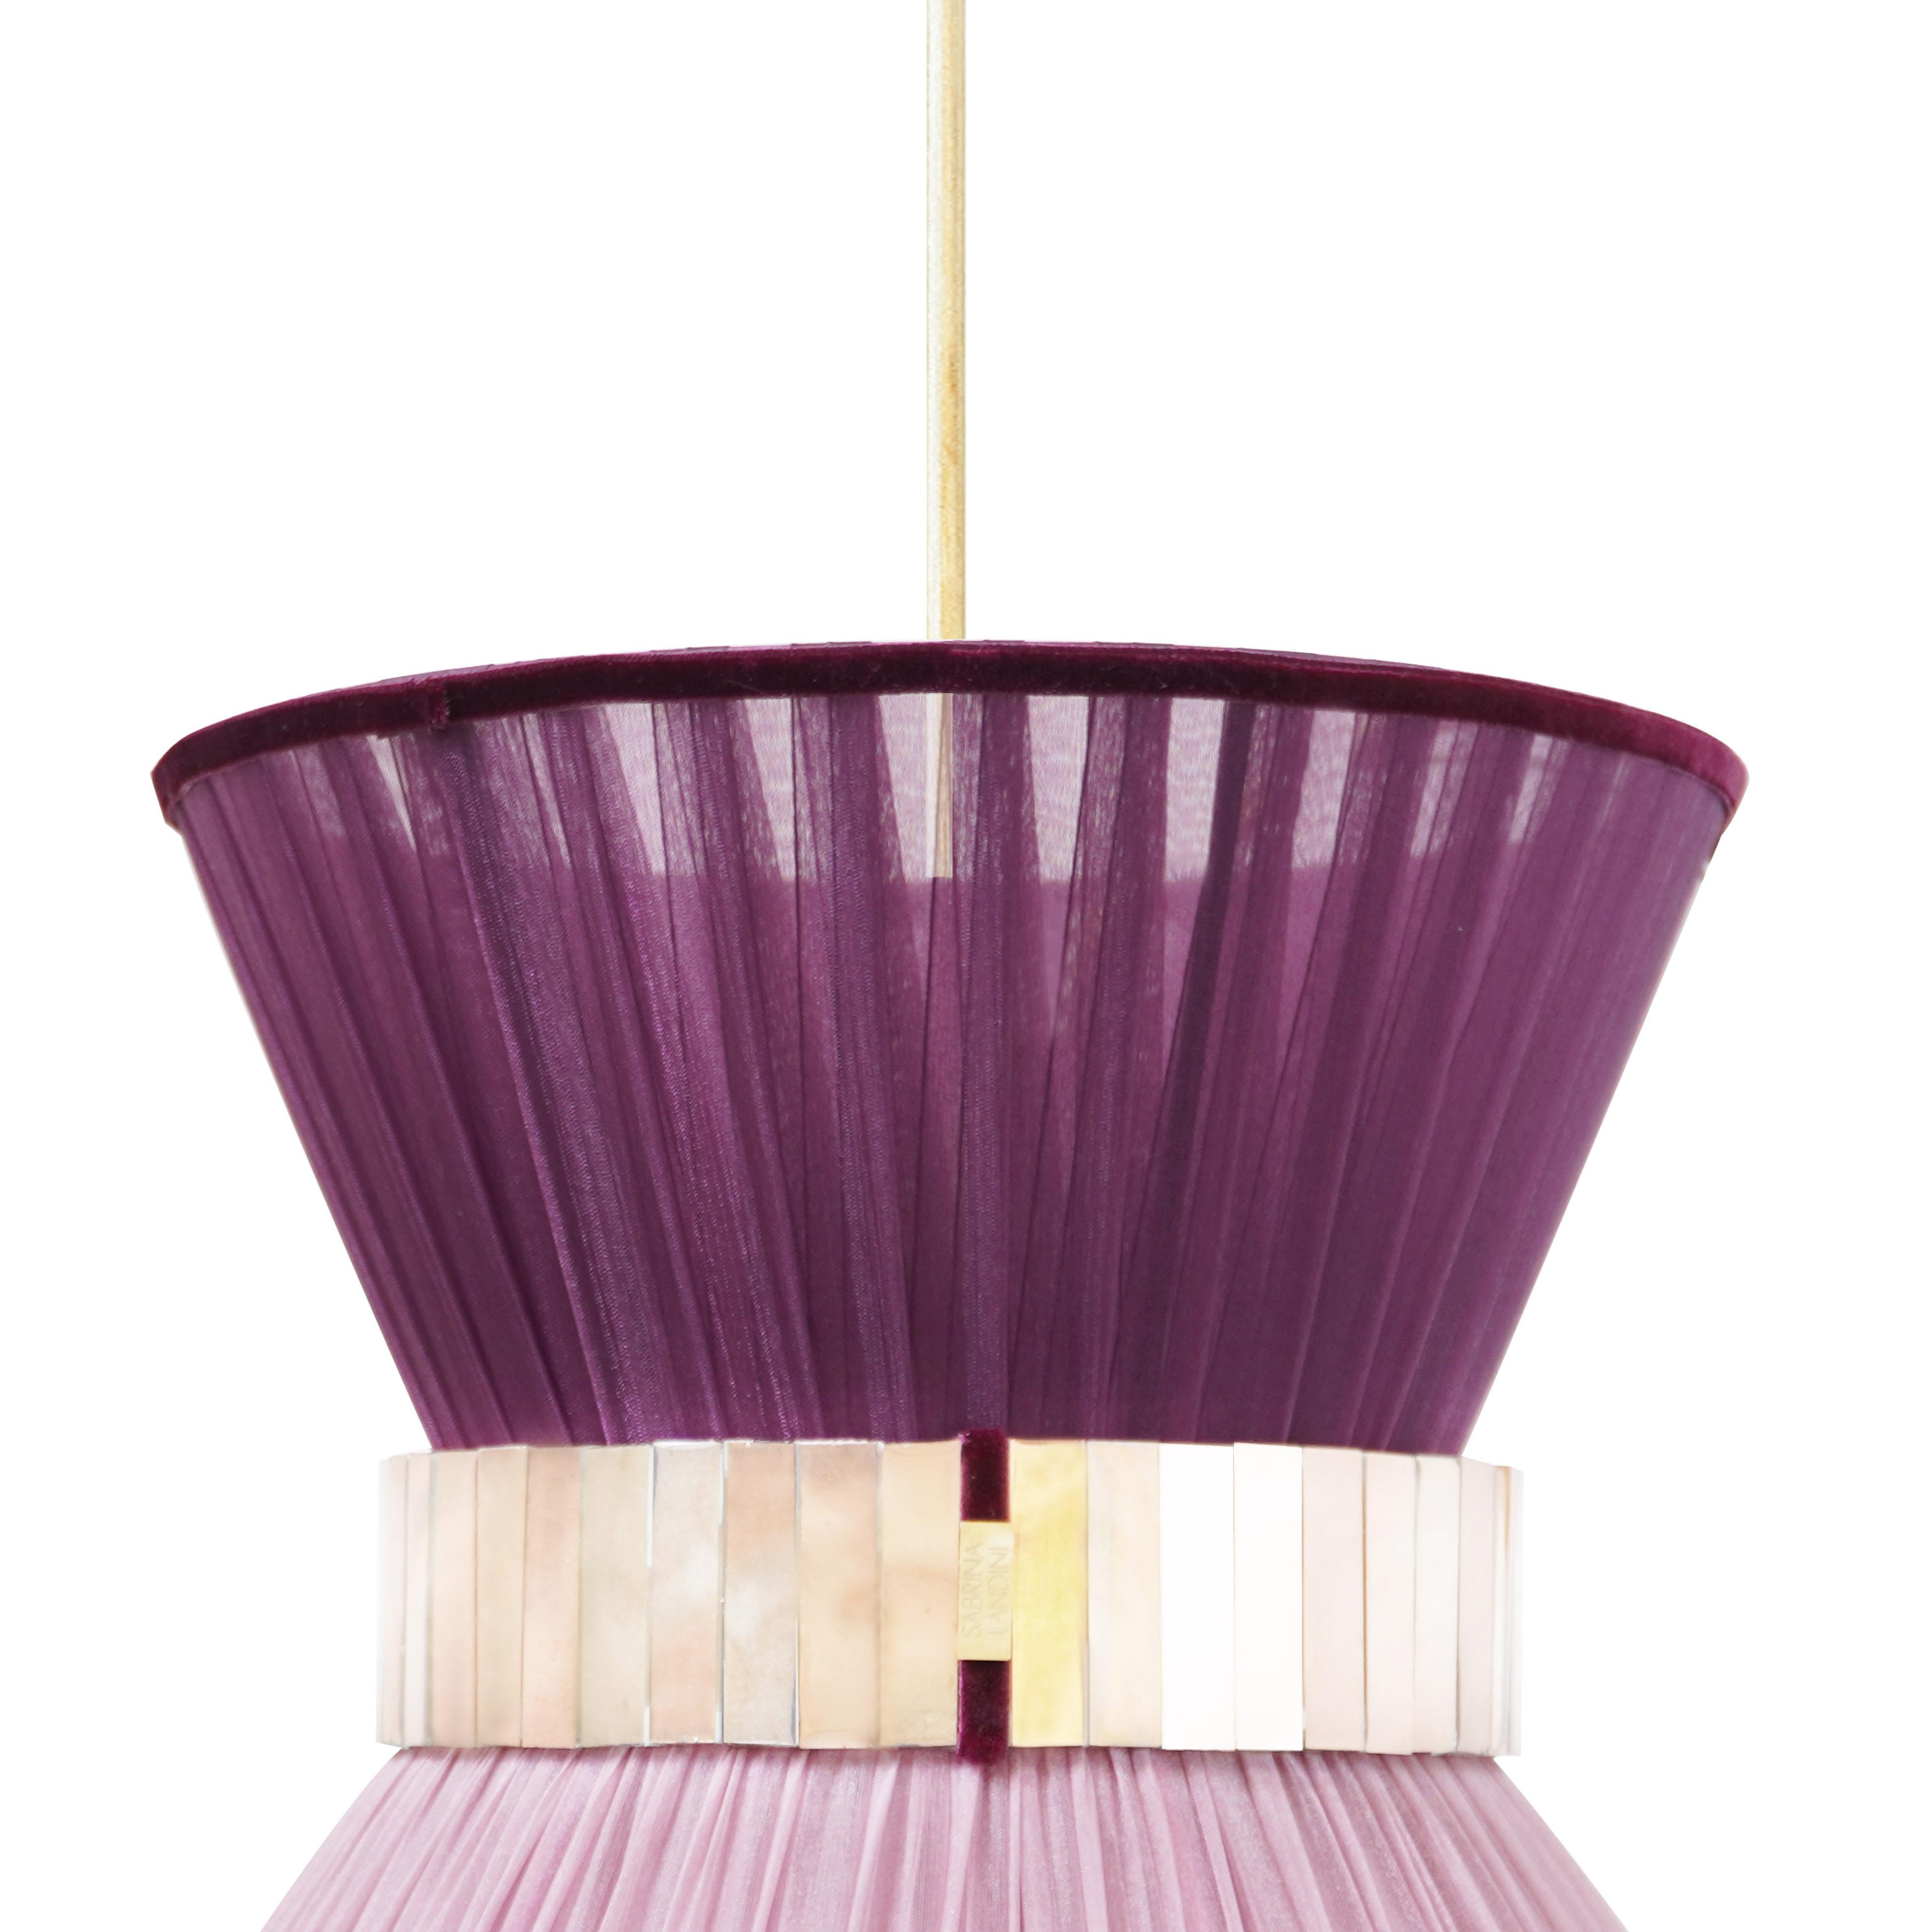 TIFFANY Die ikonische Lampe!  

Seit 20 Jahren sind wir bestrebt, Ihnen einzigartige Collection'S in Bezug auf Design und Qualität anzubieten. Alle unsere kultigen Produkte werden in unserem Atelier in der Toskana, Italien, nach einem uralten